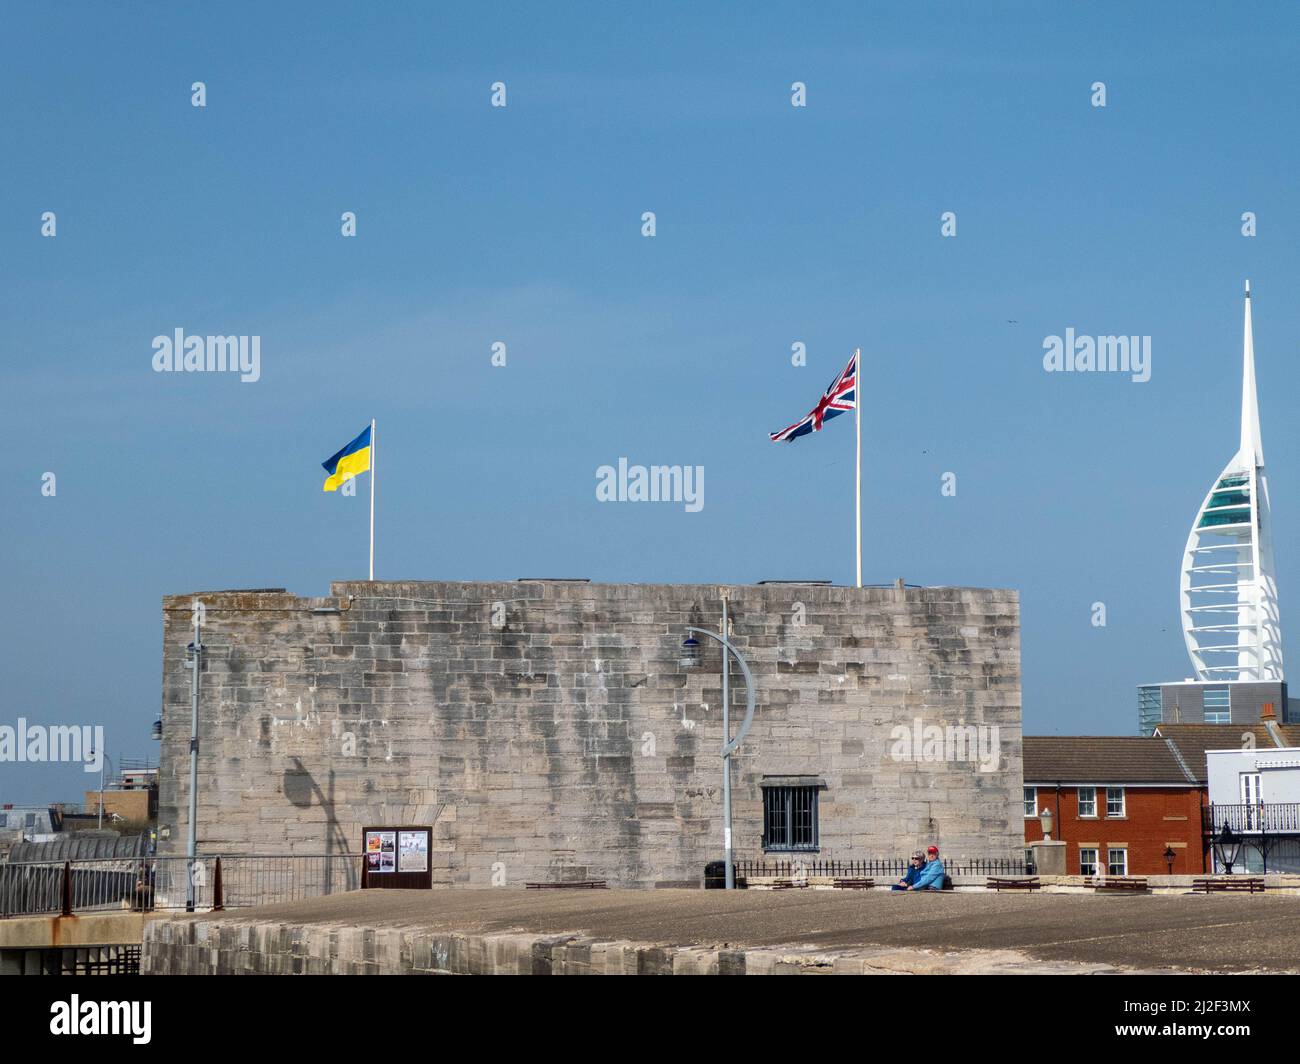 La Square Tower è una delle parti più antiche delle fortificazioni di Portsmouth Inghilterra che batte le bandiere del Regno Unito e dell'Ucraina con il Towe di Spinnaker Foto Stock